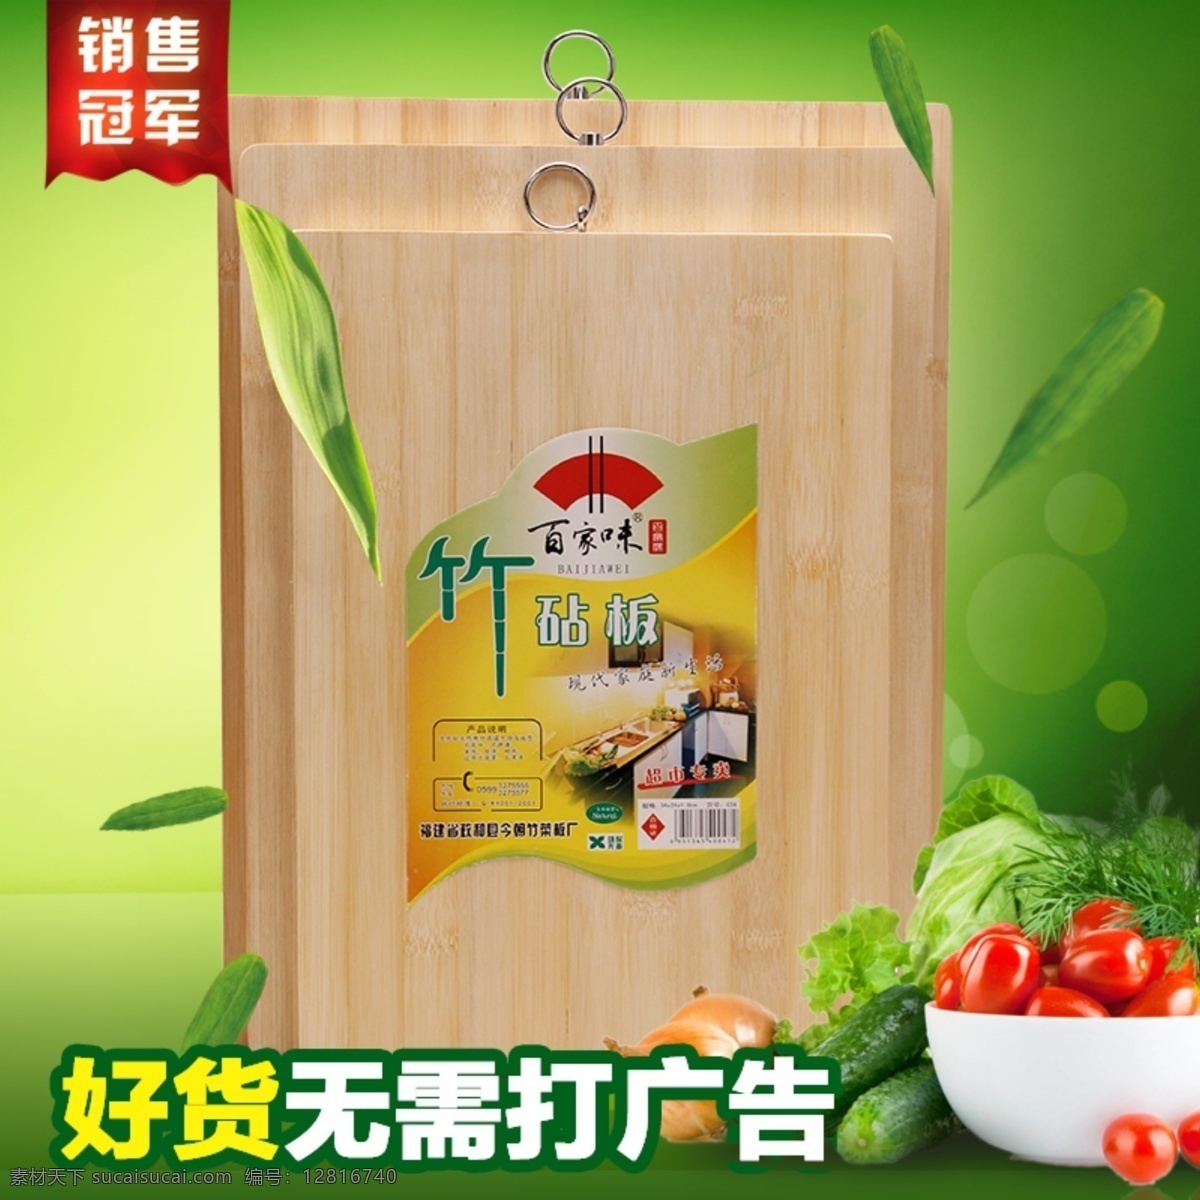 天然 竹木 菜板 菜谱 案板免费下载 案板 海报 促销海报